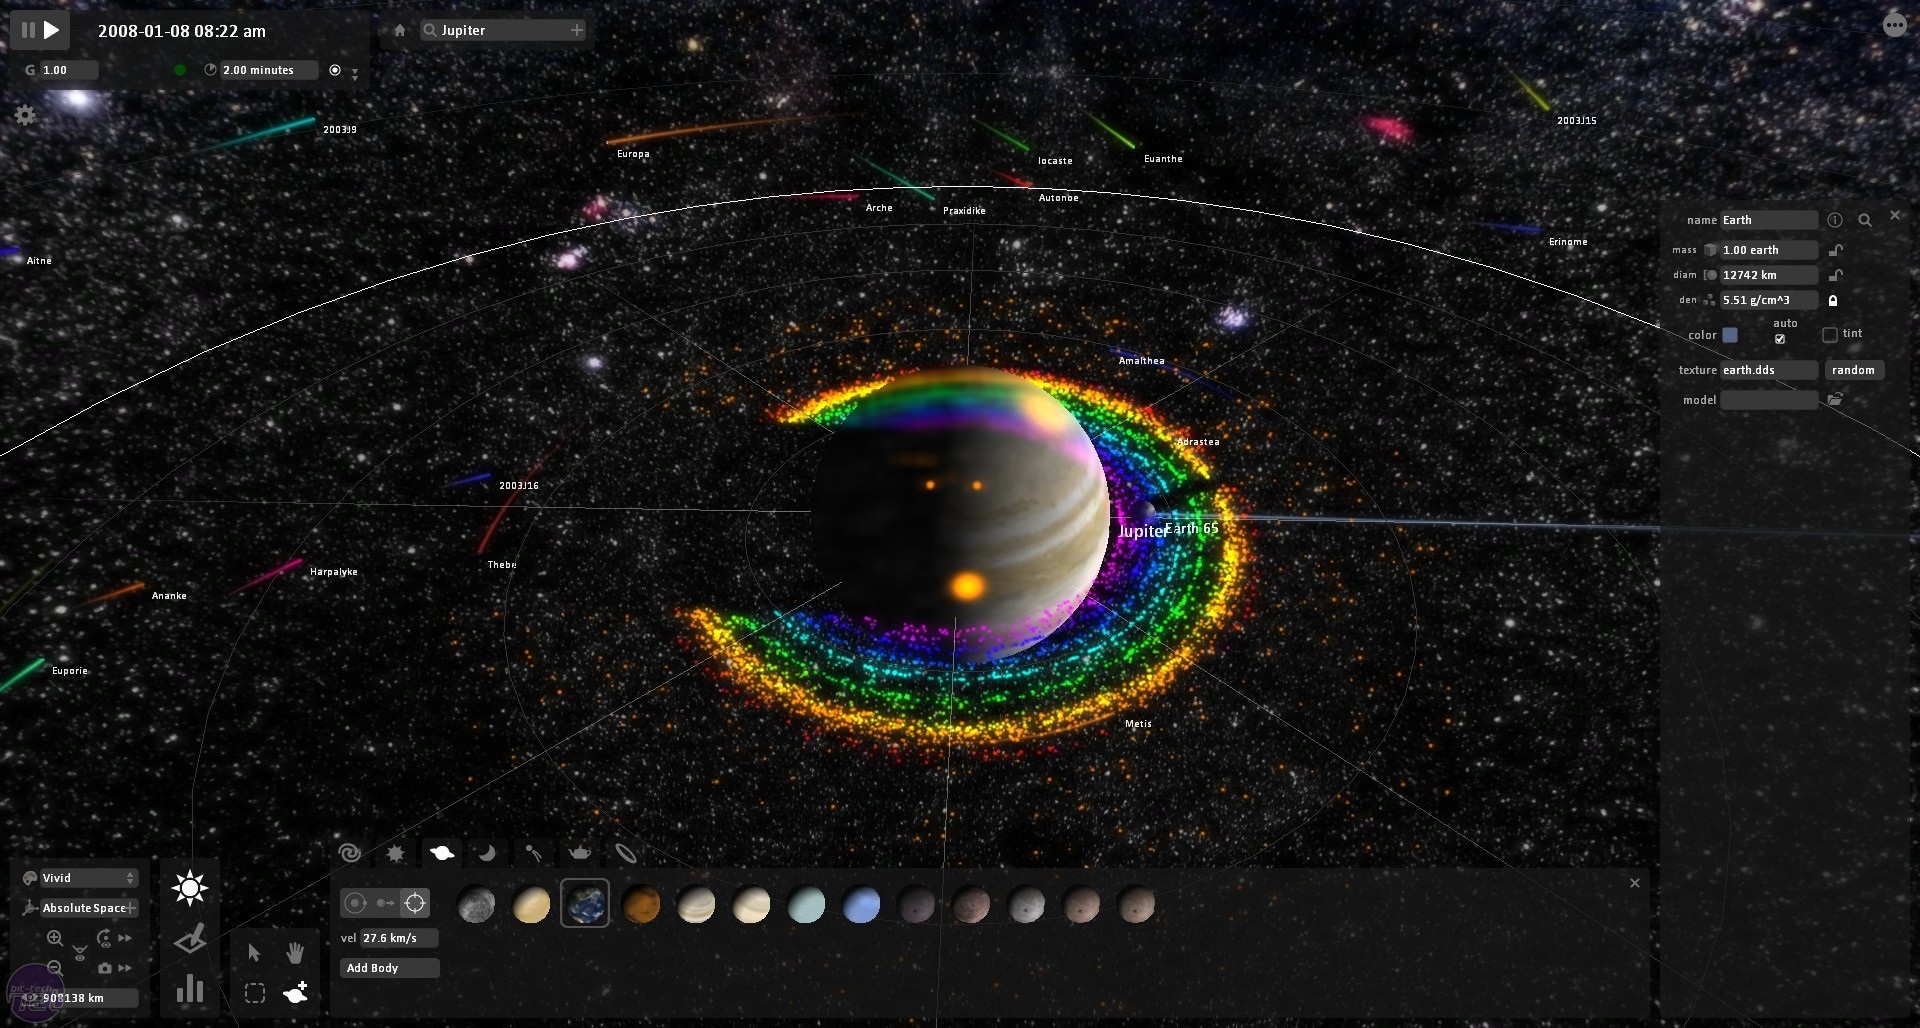 Universe Sandbox Download For Mac